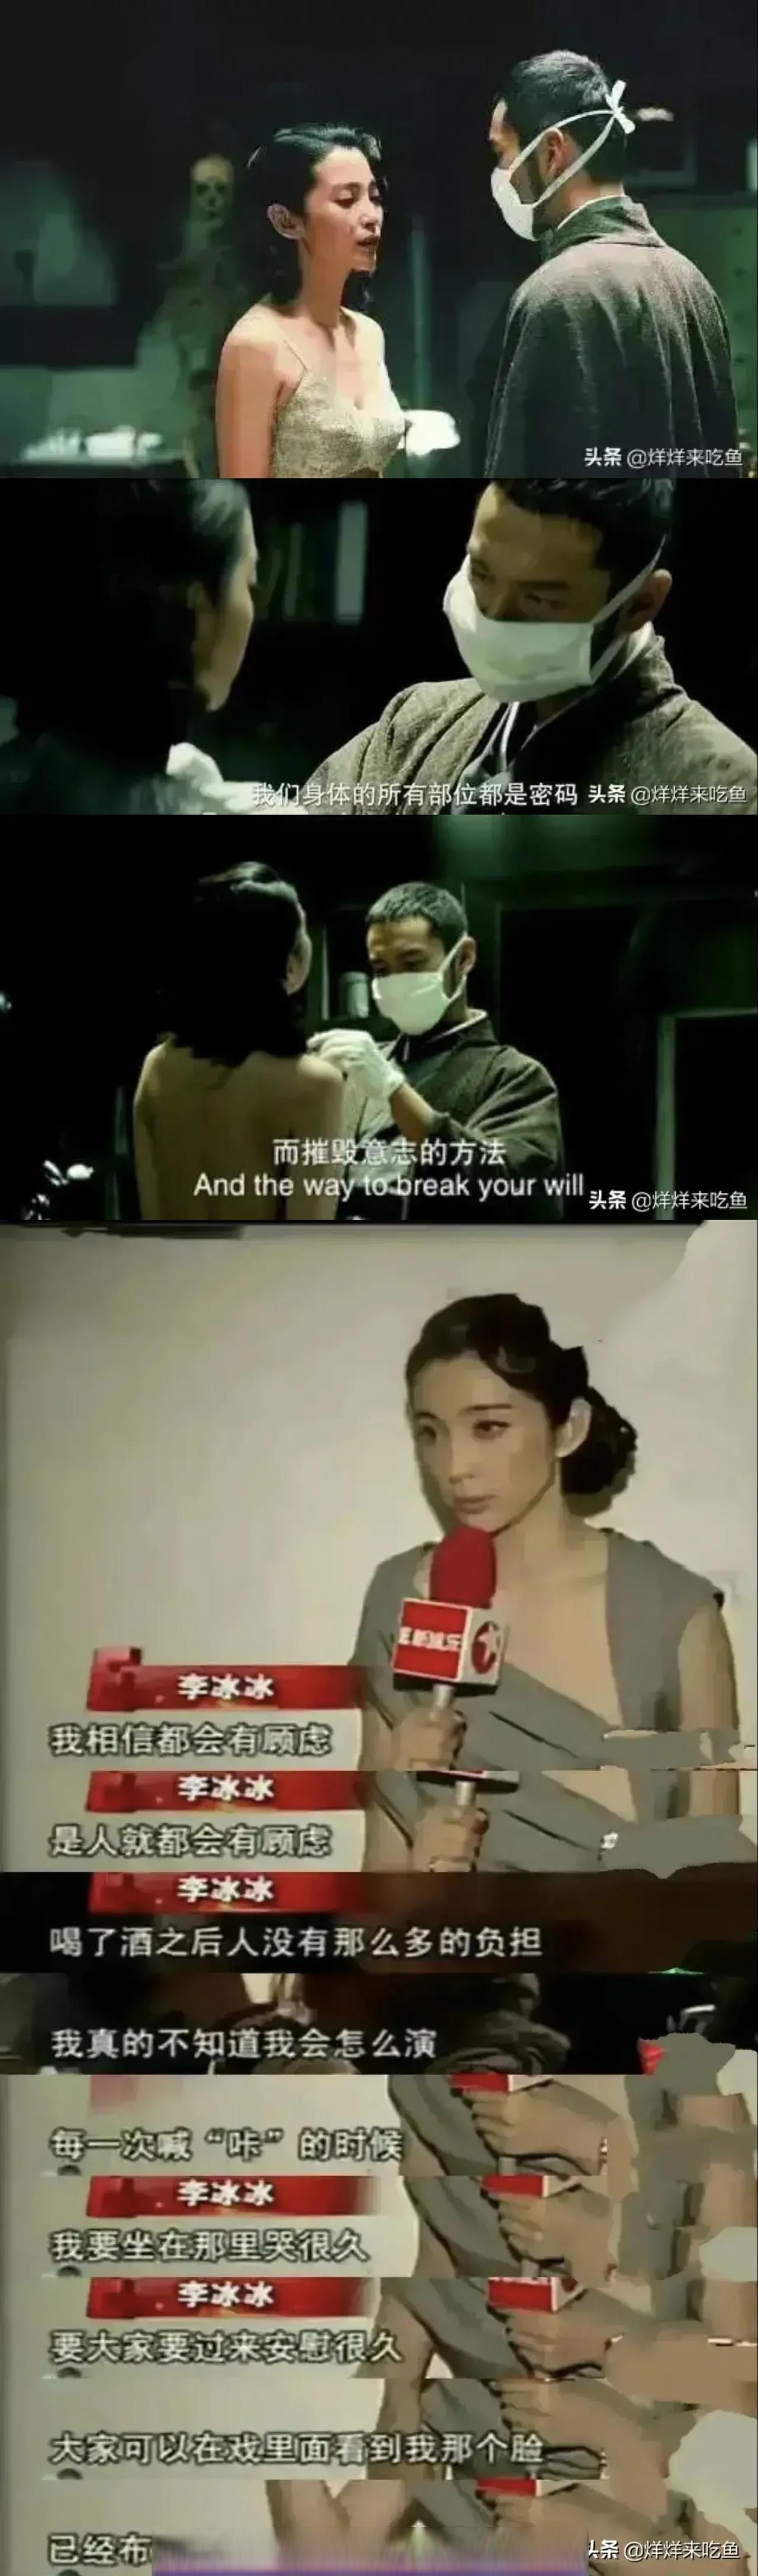 2009年,李冰冰拍《风声》时,和黄晓明有一场脱衣服的戏份,为了壮胆,她